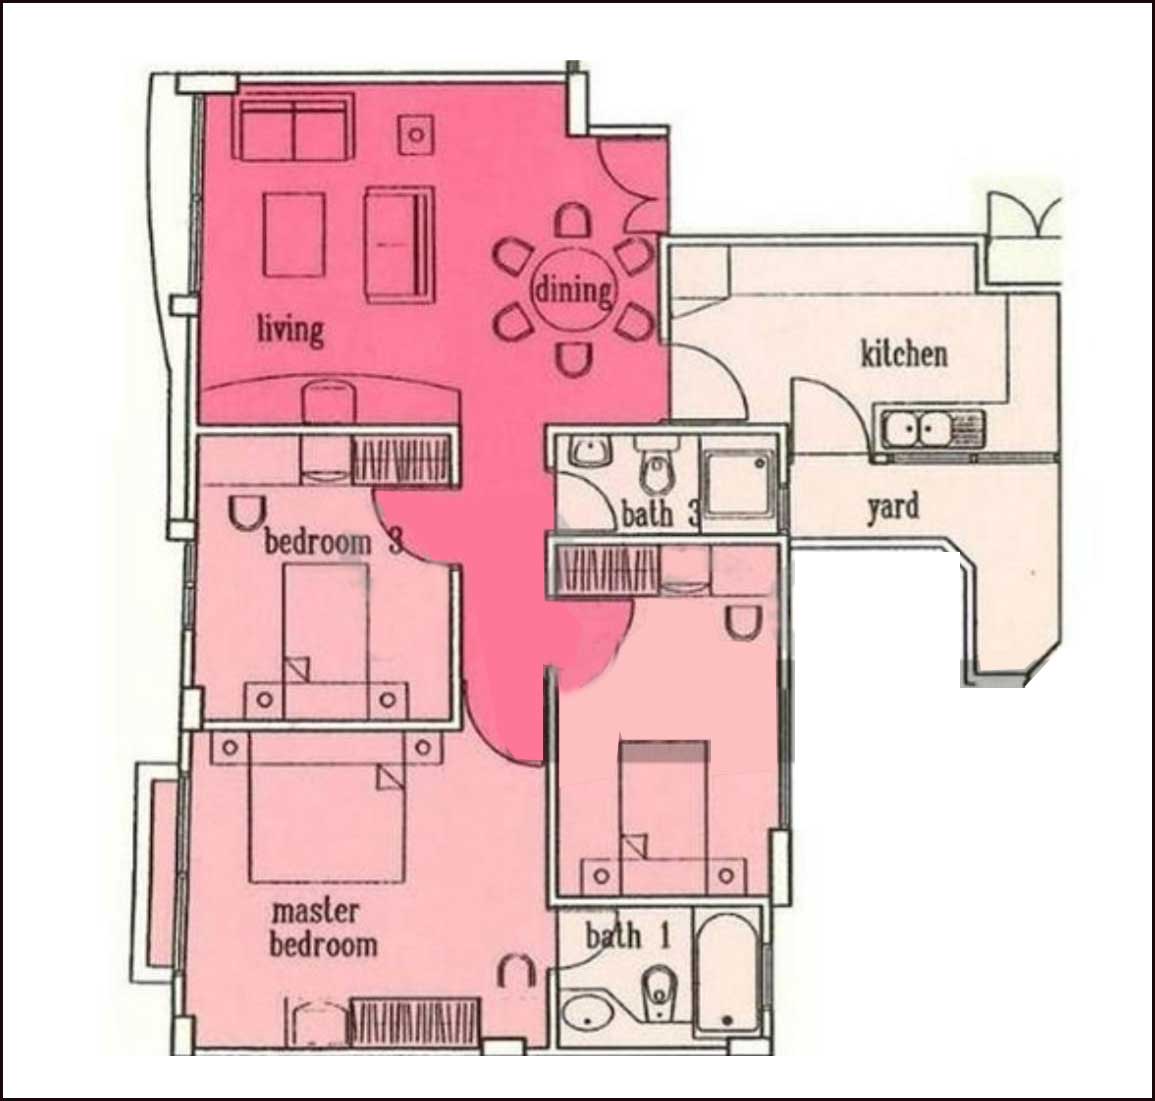 Bougainvilla Apartments Floor Plans & Units Mix